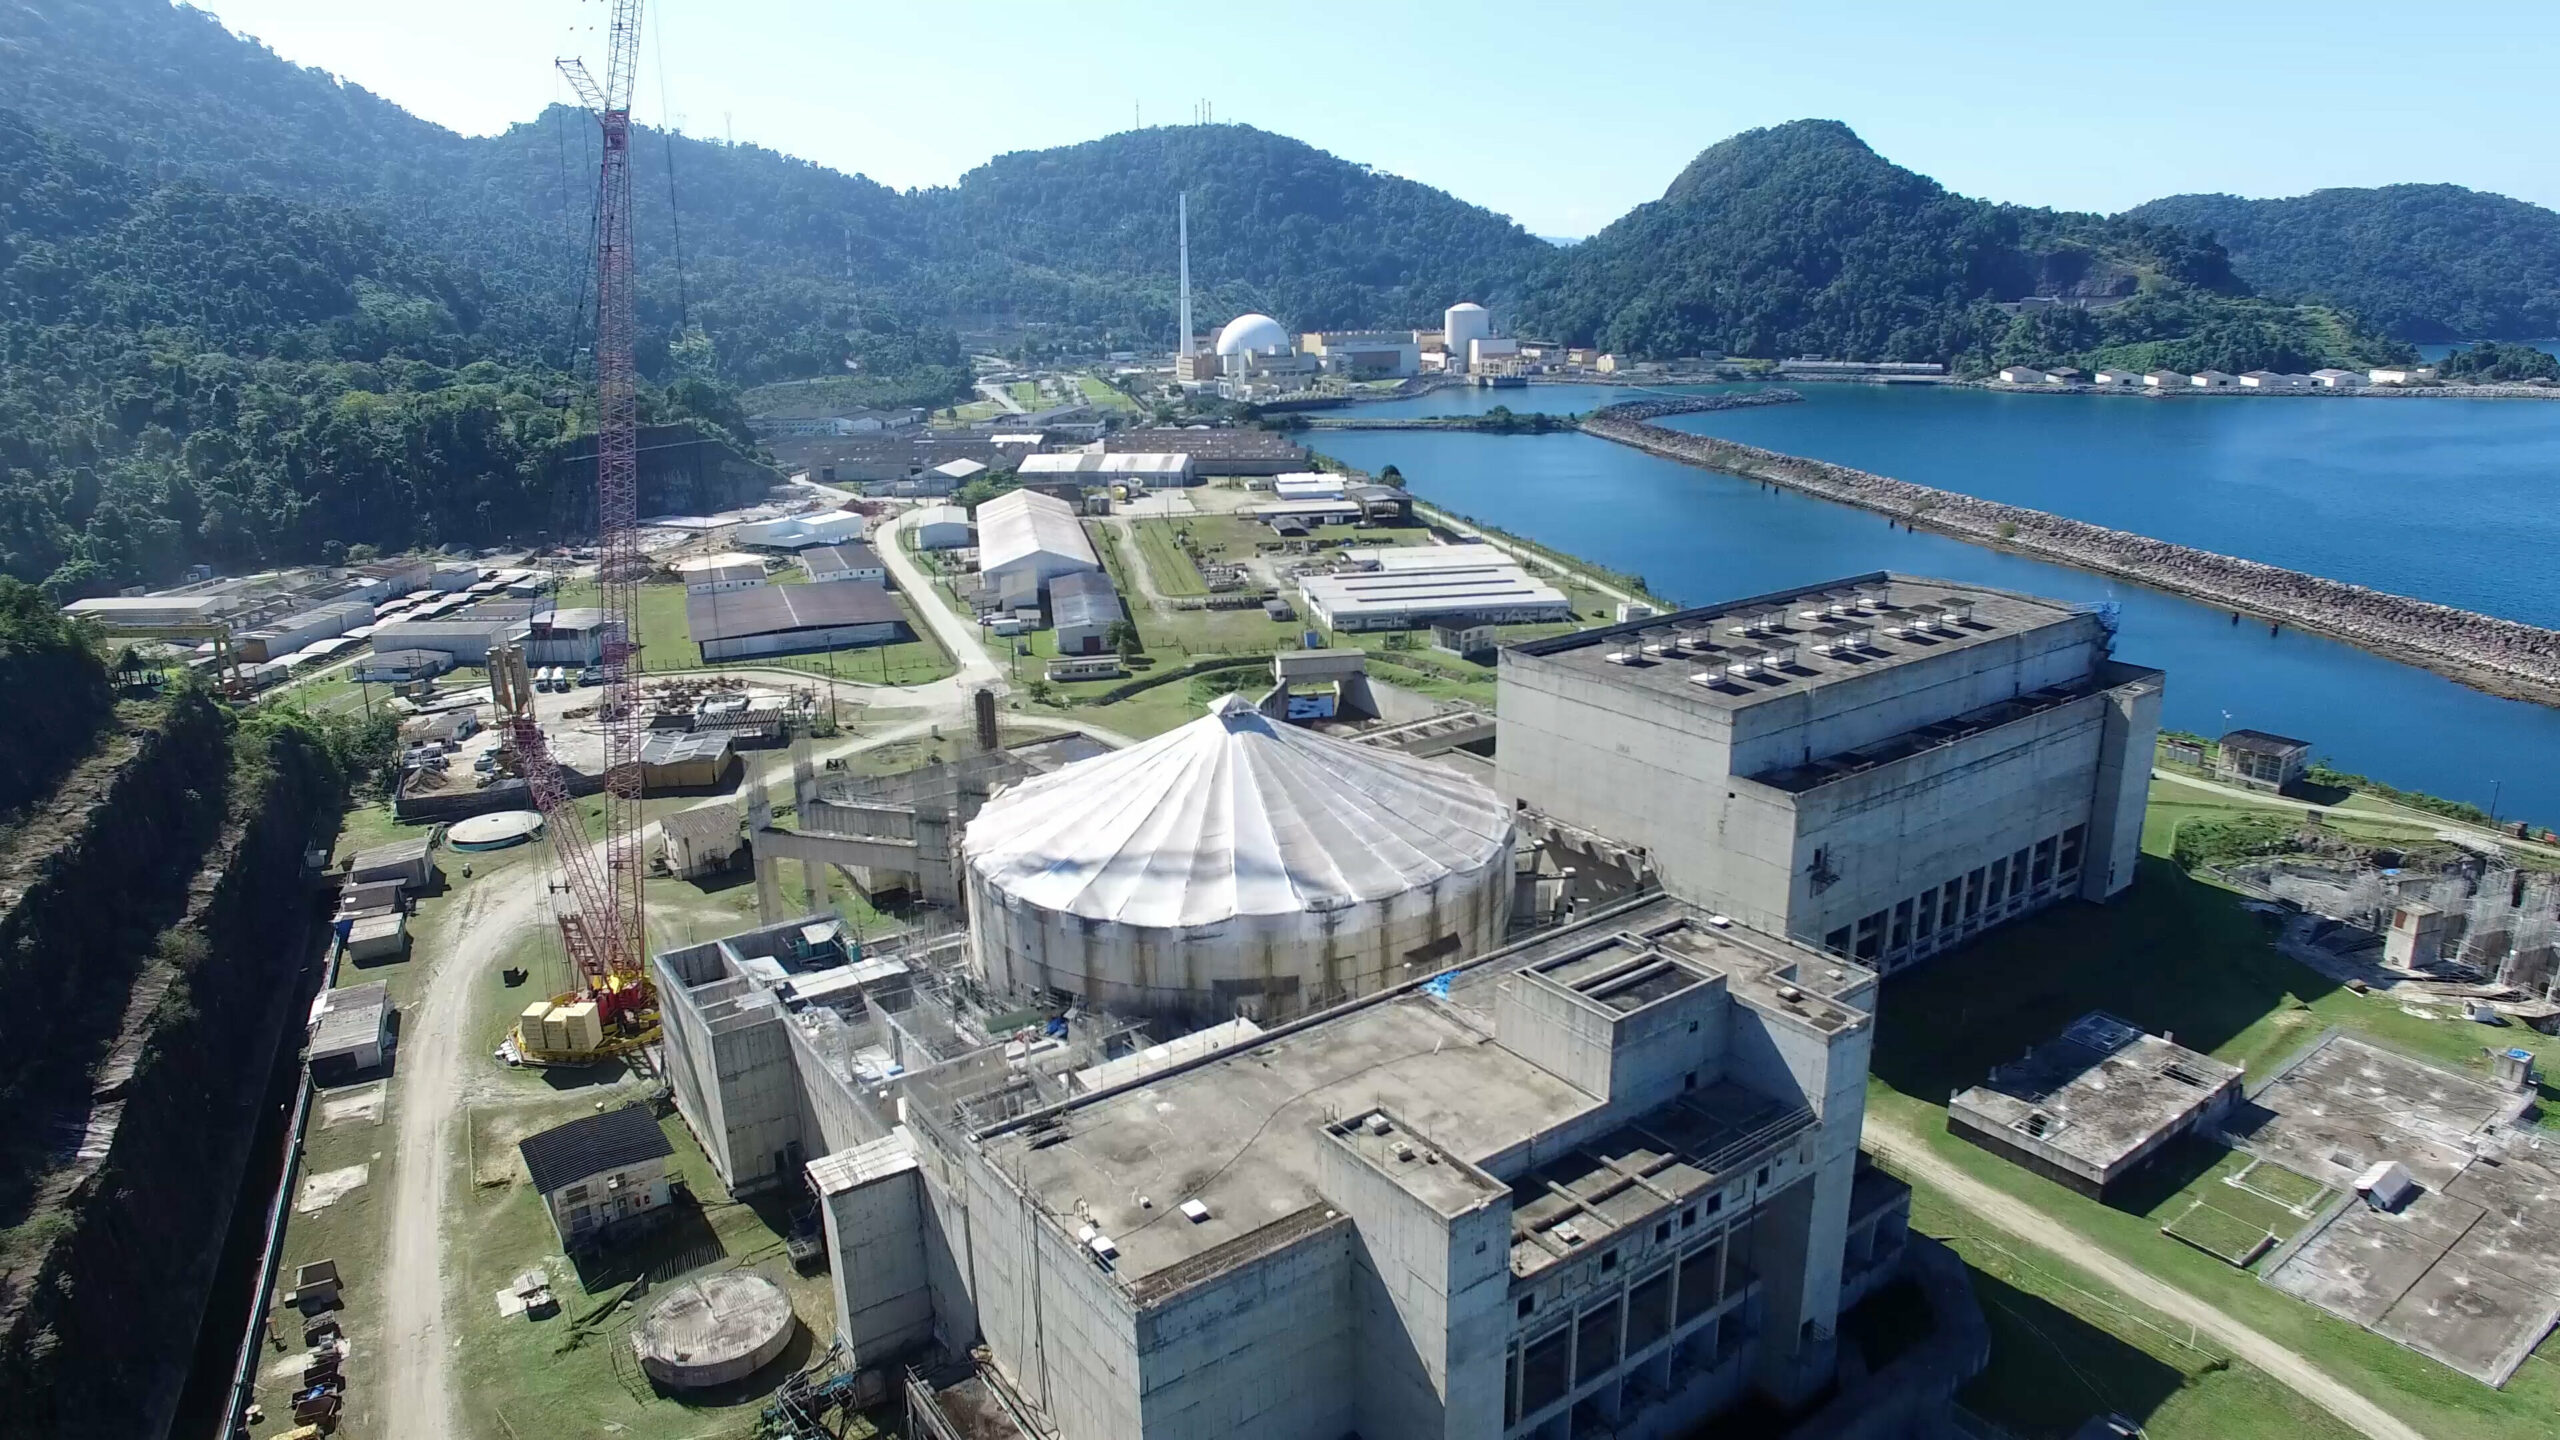 O Governo Federal visa reavaliar o orçamento da ENBPar para o projeto de obras da Angra 3. O objetivo é avançar no desenvolvimento da usina nuclear, impulsionando o setor naval brasileiro.